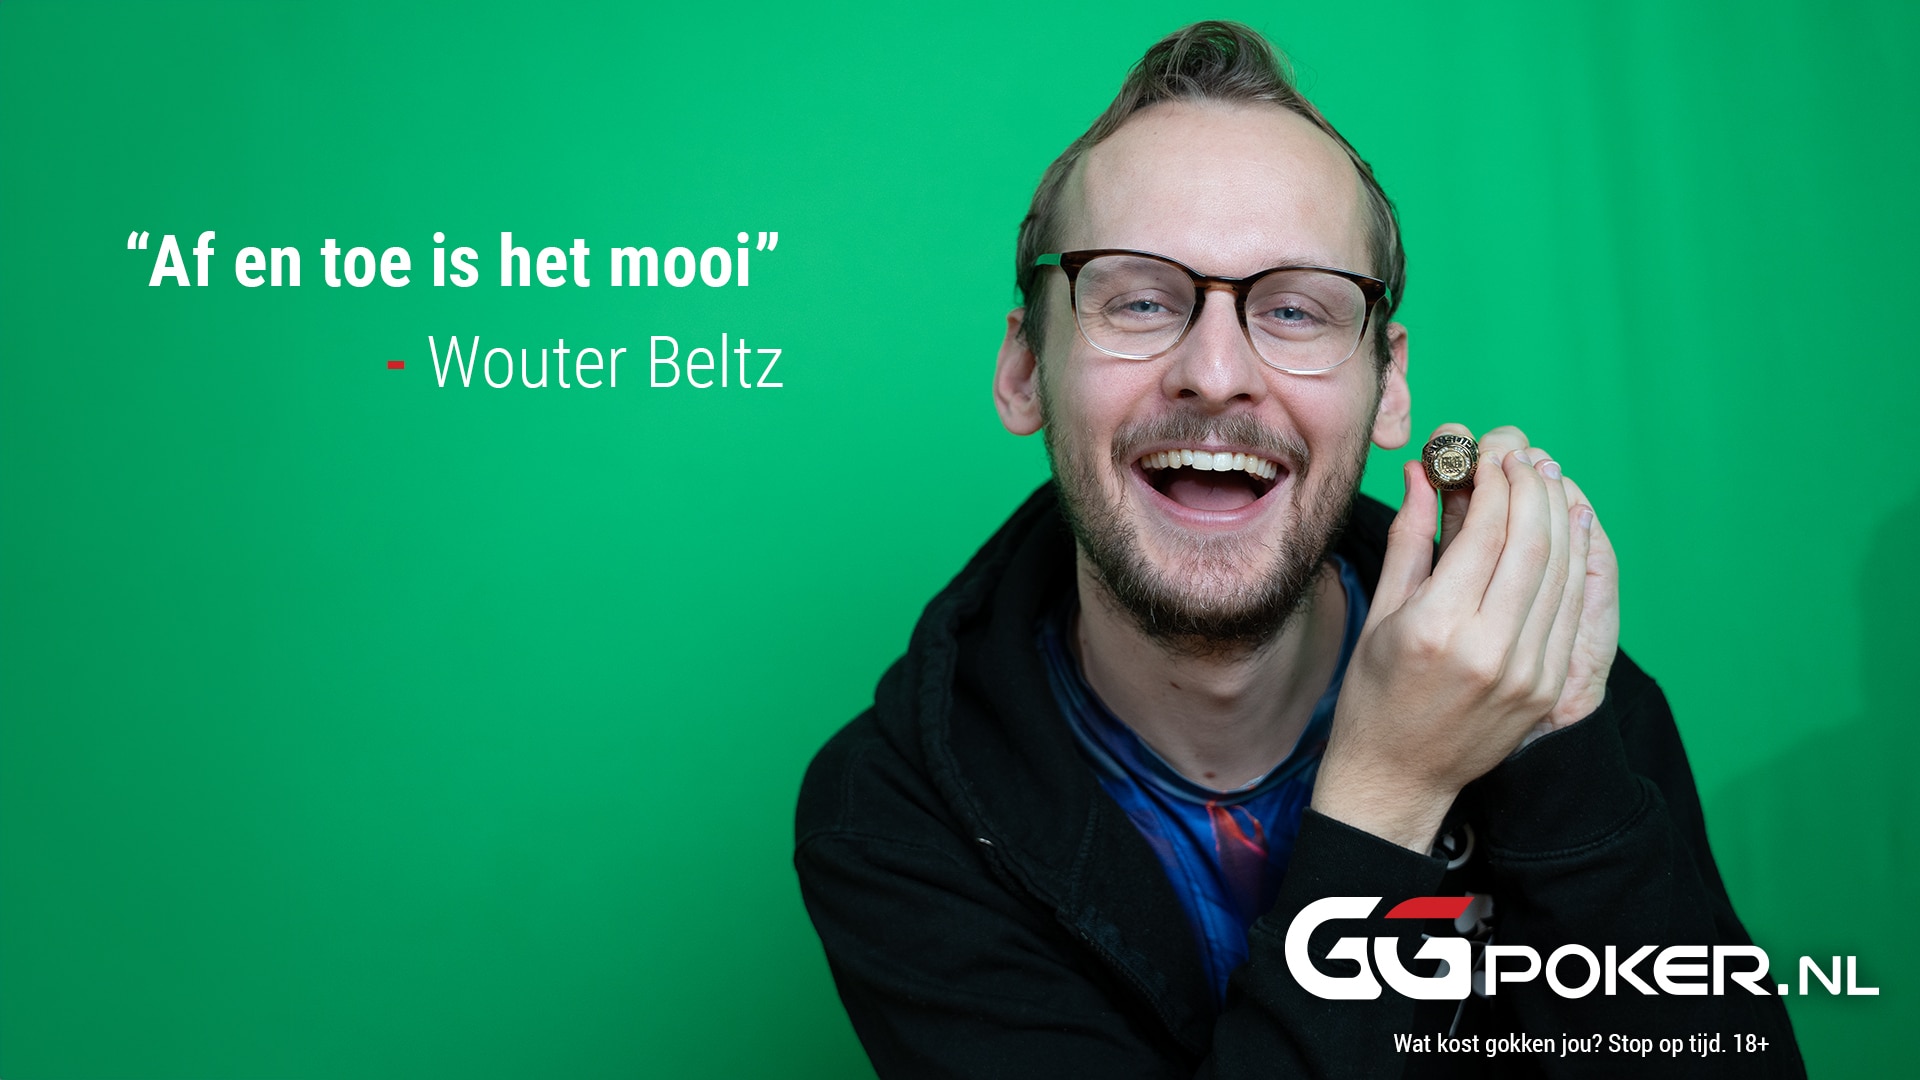 Interview met Wouter Beltz: “Af en toe is het mooi”